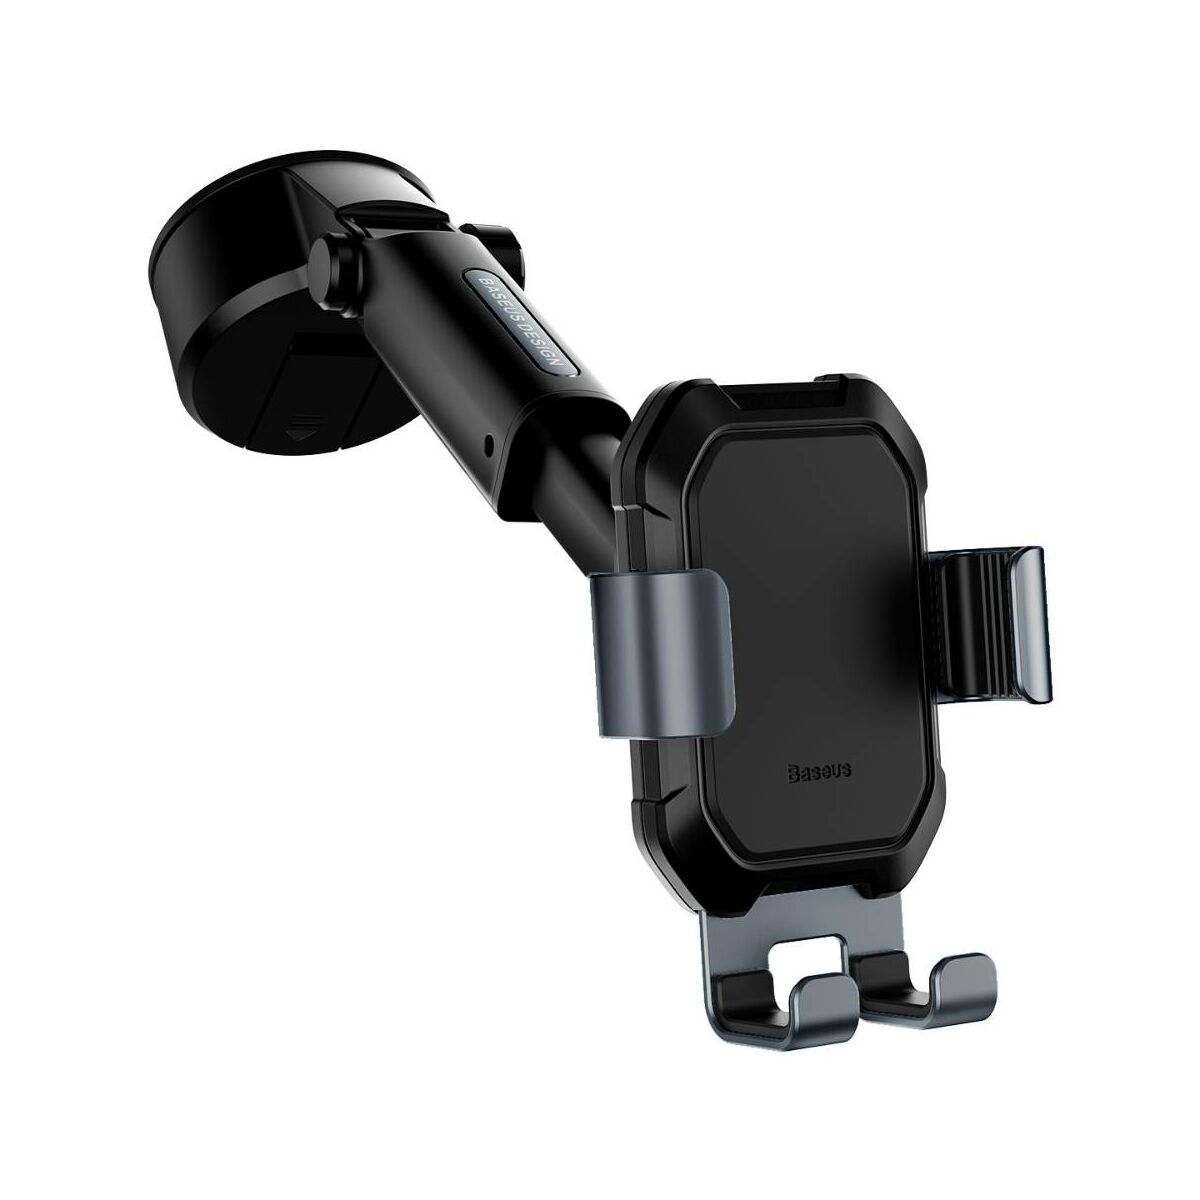 Kép 12/18 - Baseus autós telefontartó, Tank Gravity, műszerfalra vagy szélvédőre helyezhető, fekete (SUYL-TK01)